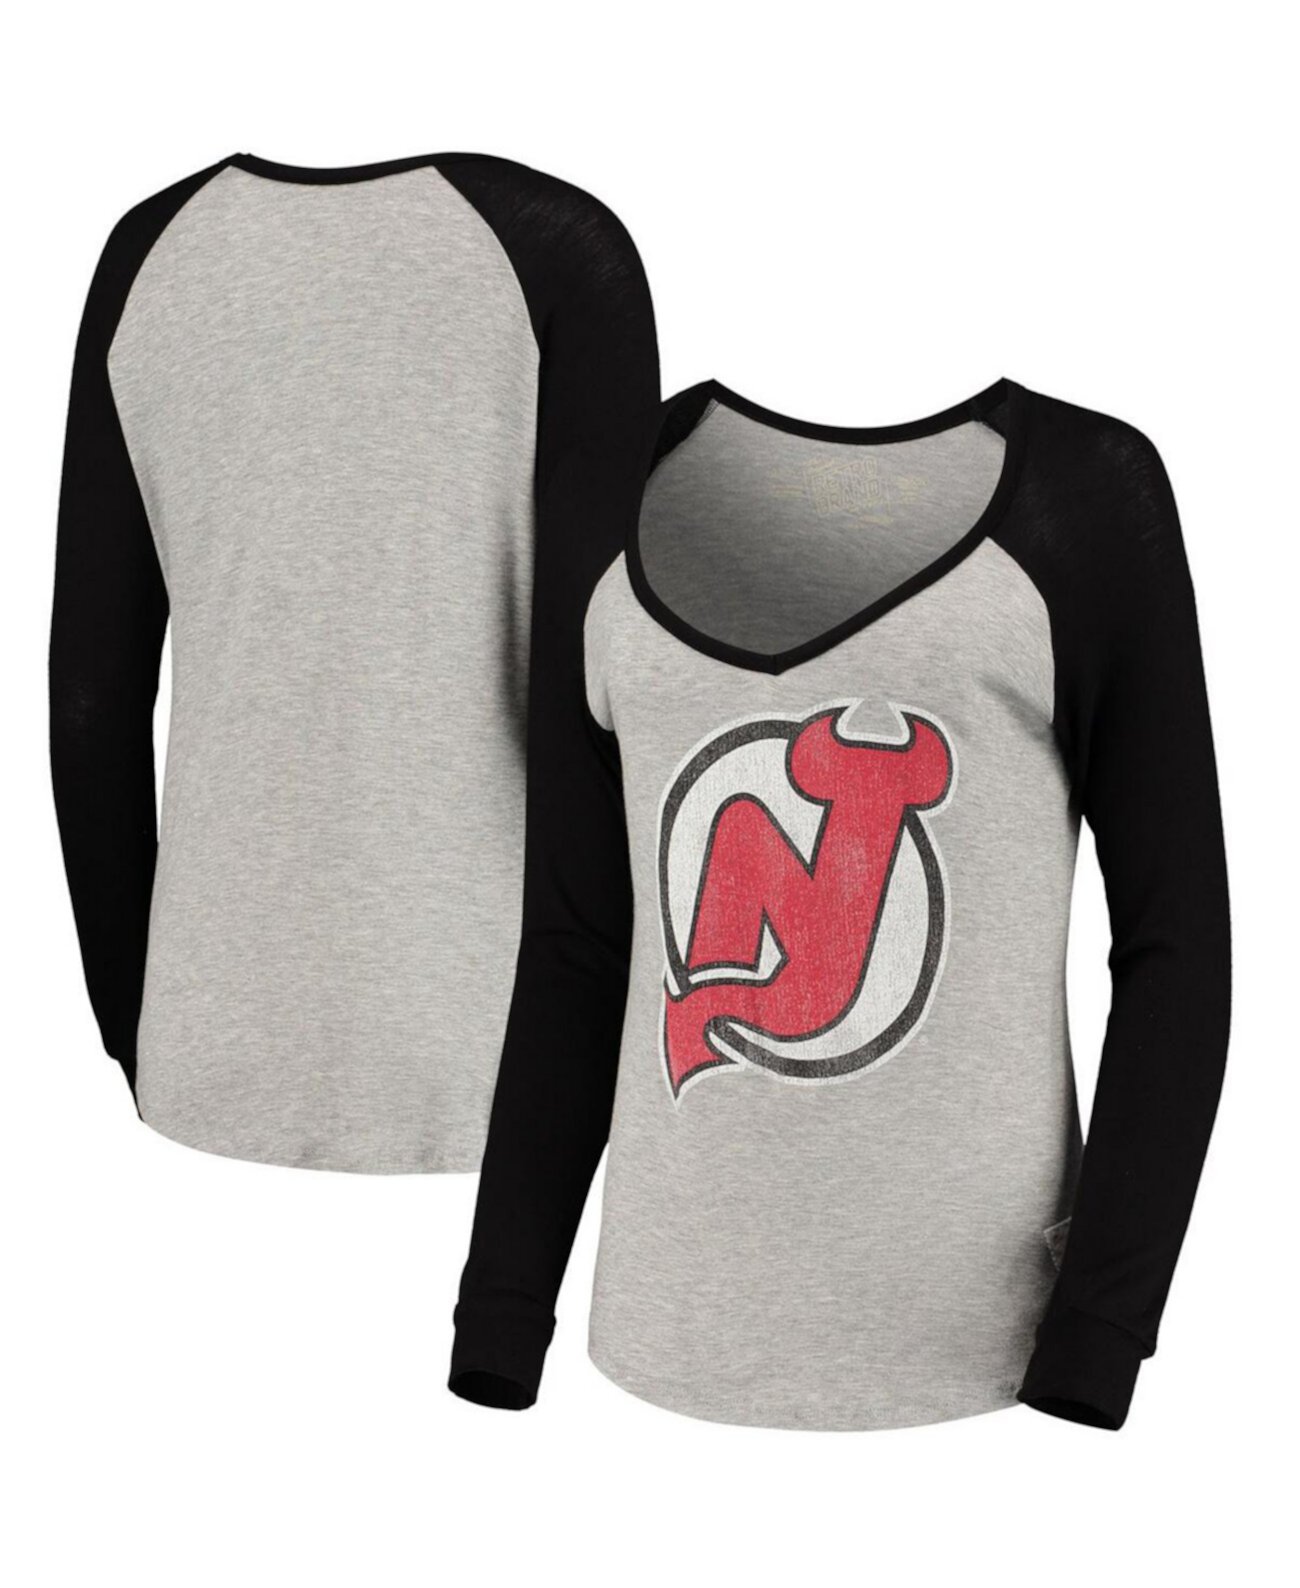 Женская футболка New Jersey Devils MVP с длинными рукавами и v-образным вырезом в меланжевом цвете с регланами Original Retro Brand